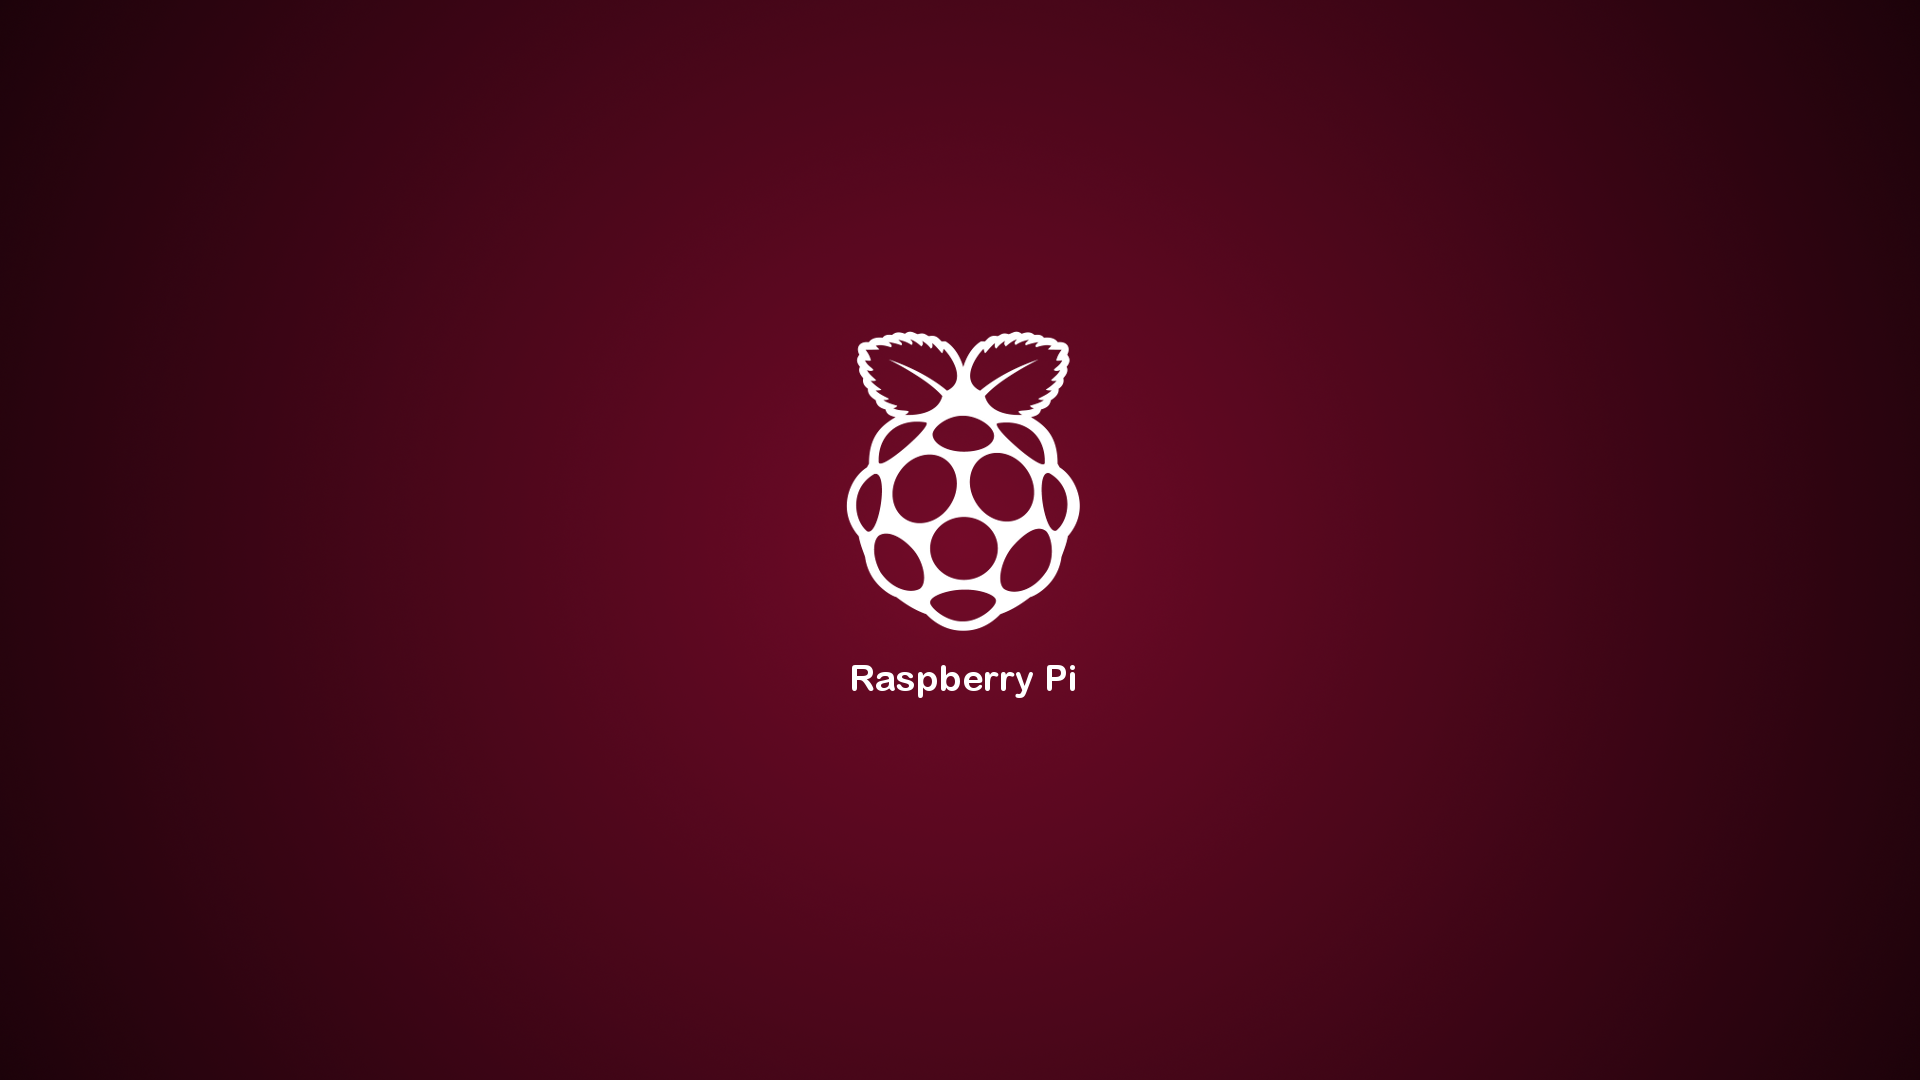 Raspberry Pi Training In Chandigarh Raspberry Pi Training - Raspberry Pi , HD Wallpaper & Backgrounds